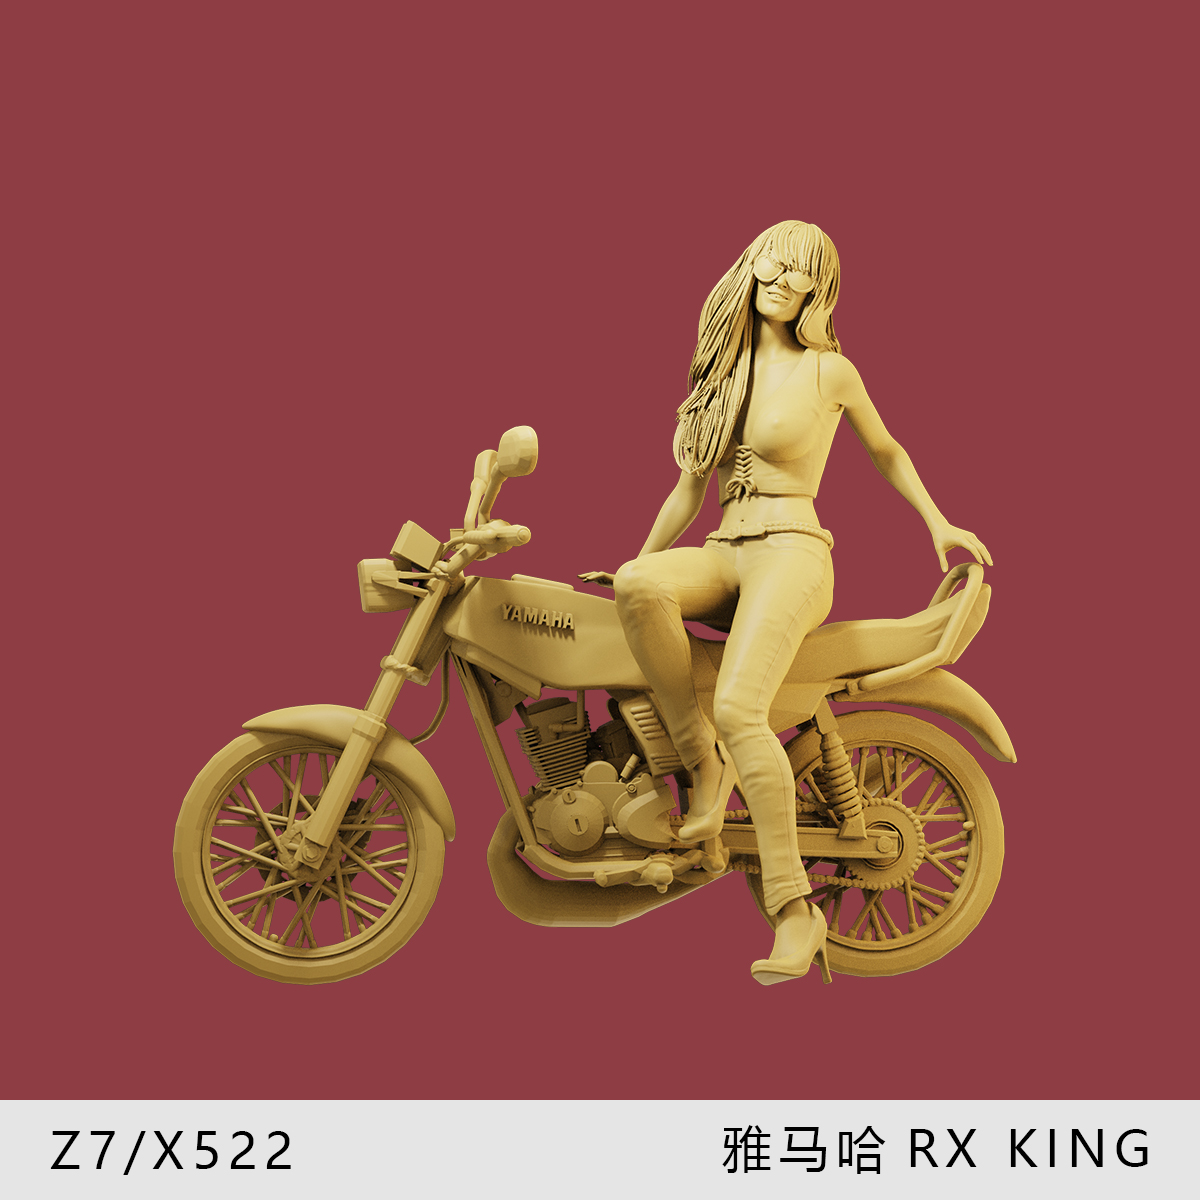 【雅马哈RXKING】90年代复古1/64摩托车模型手办1:43微缩沙盘白模